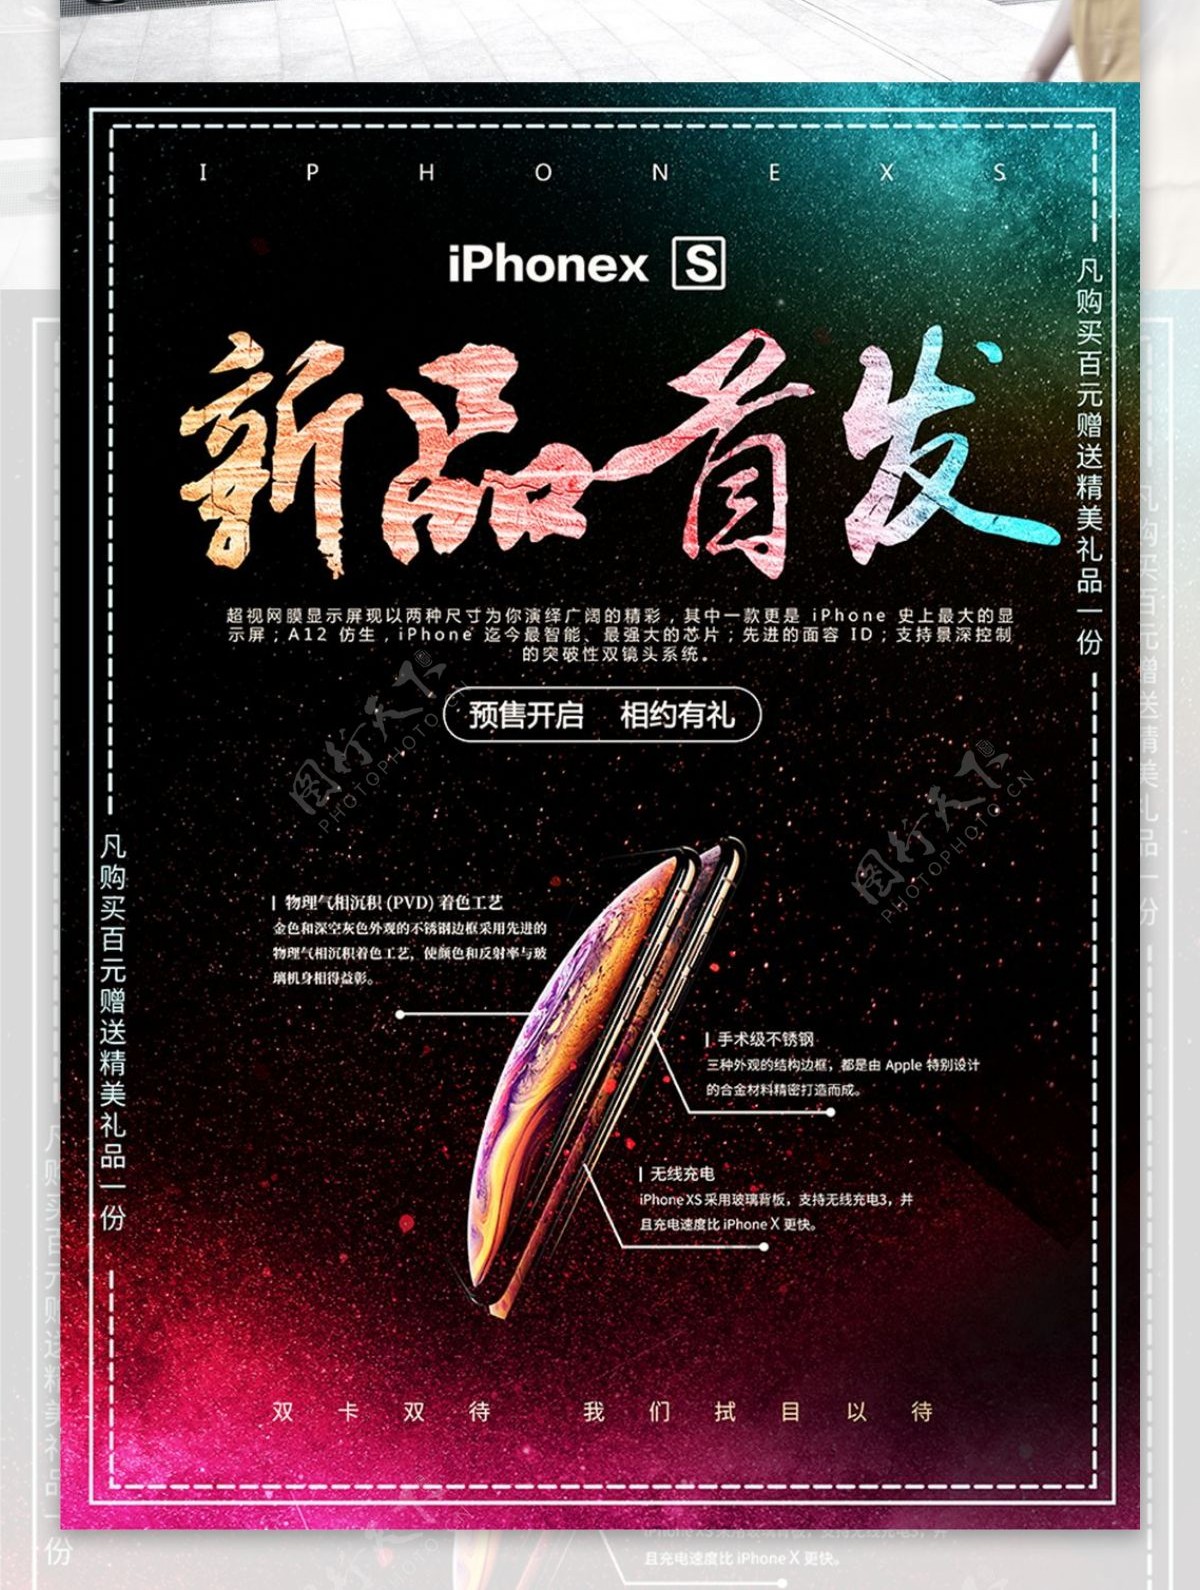 黑色大气iPhoneXs手机促销海报